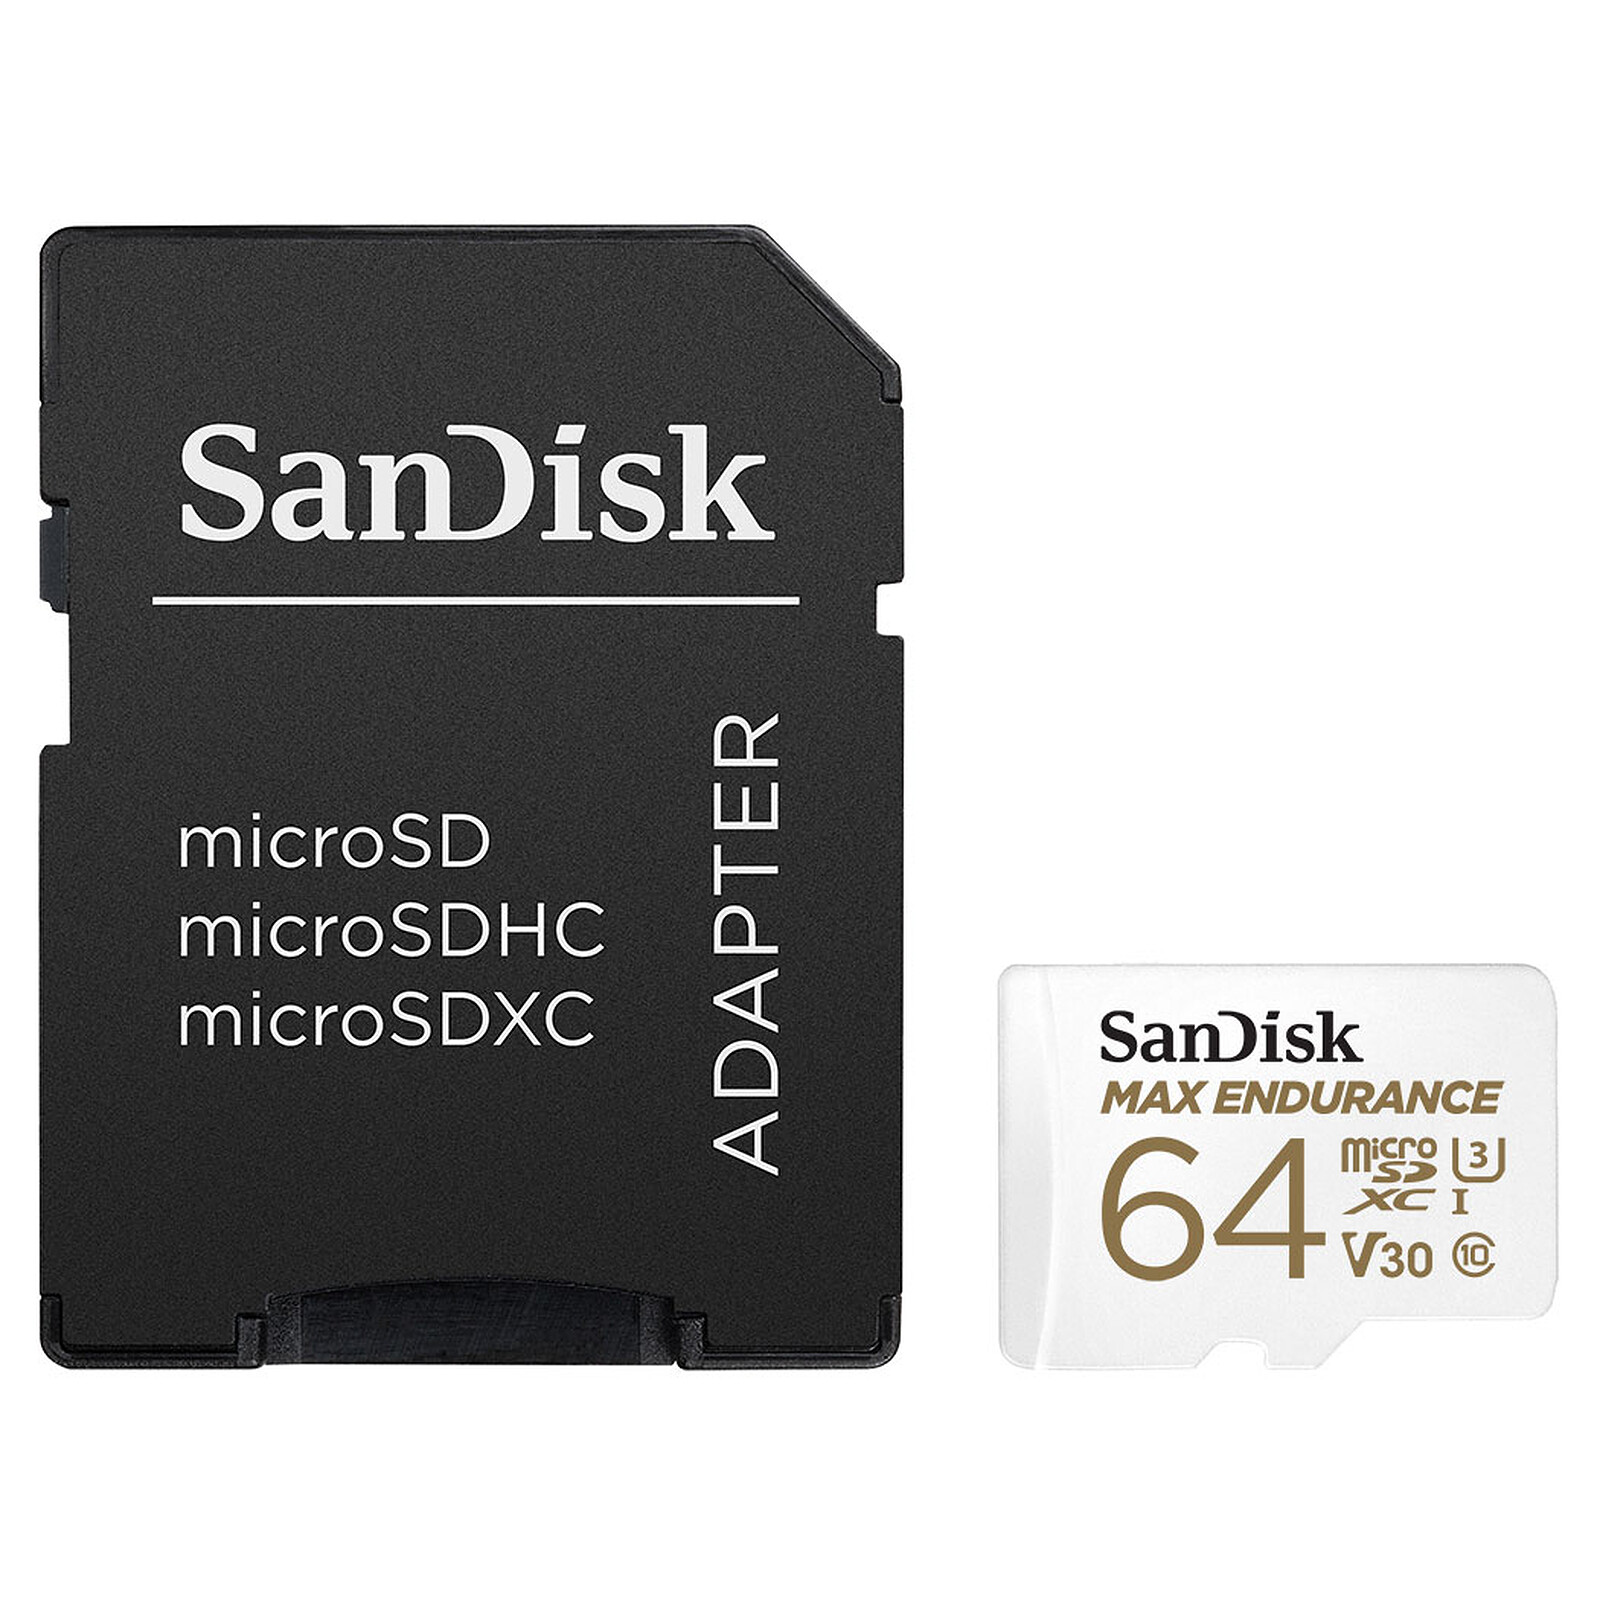 Latter Sige falskhed SanDisk Max Endurance microSDXC UHS-I U3 V30 64GB SD Adapter - Memory card  Sandisk on LDLC